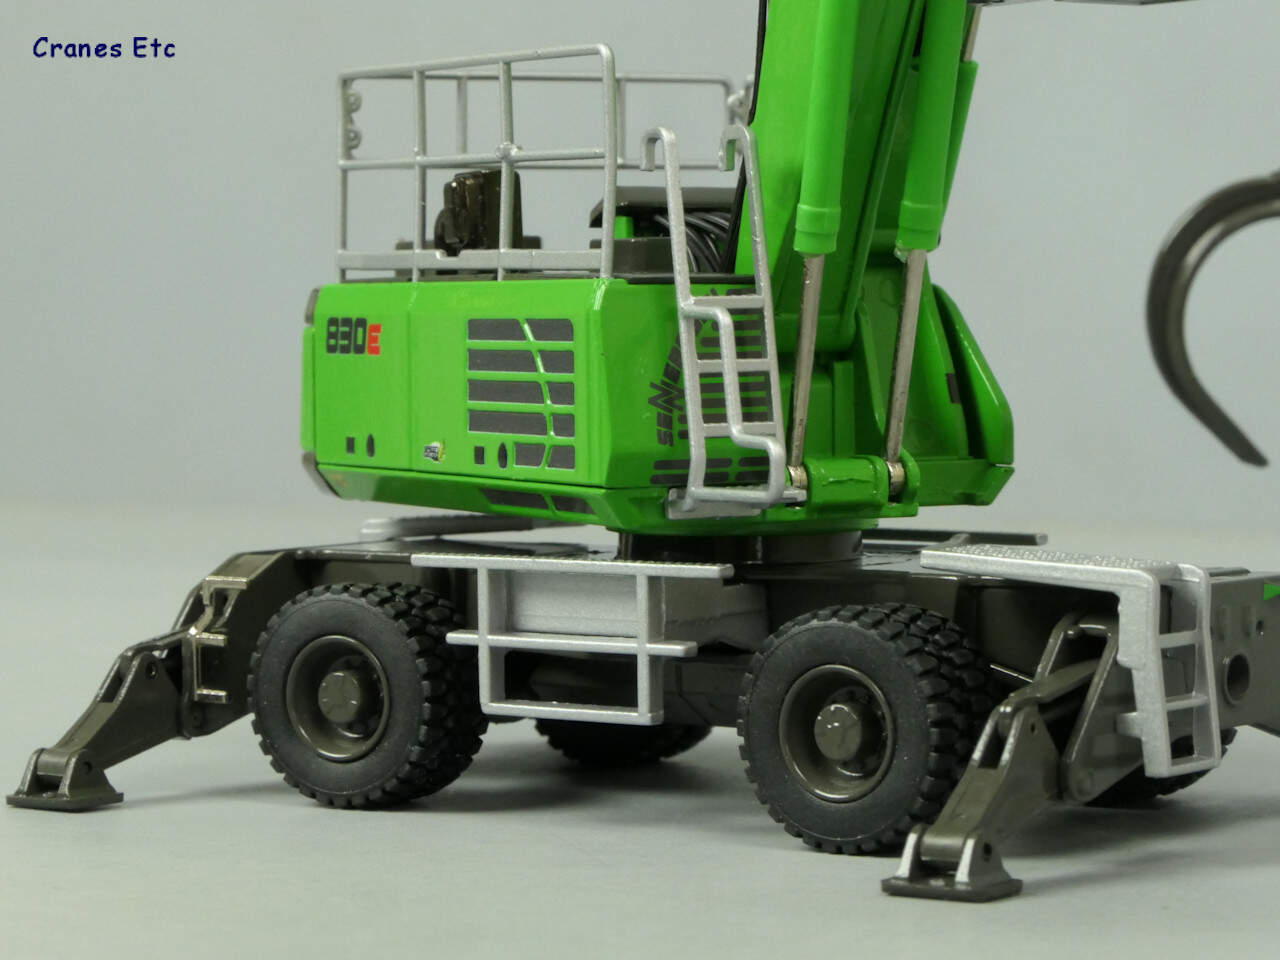 比例模型玩具天地» [CONRAD] Sennebogen 830E Material Handling Machine